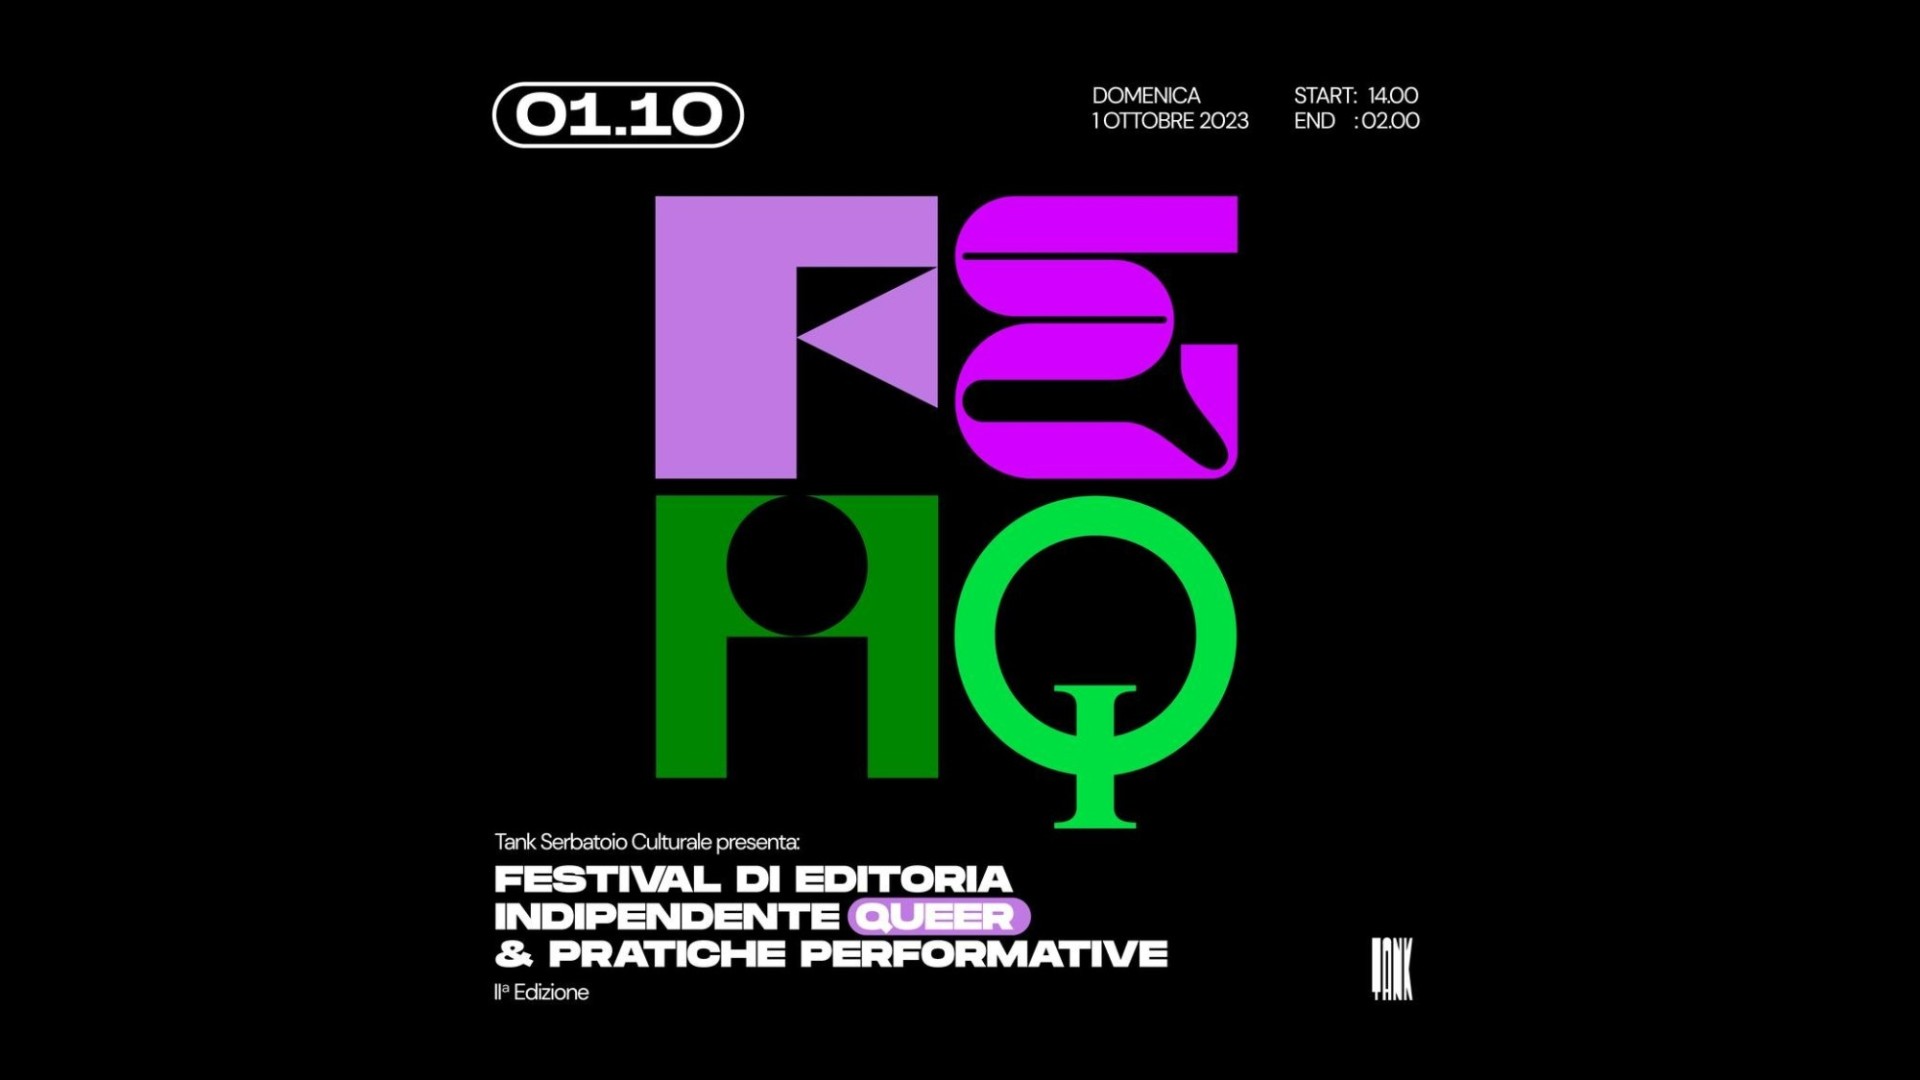 Feiq - Festival Editoria Indipendente Queer & pratiche performative